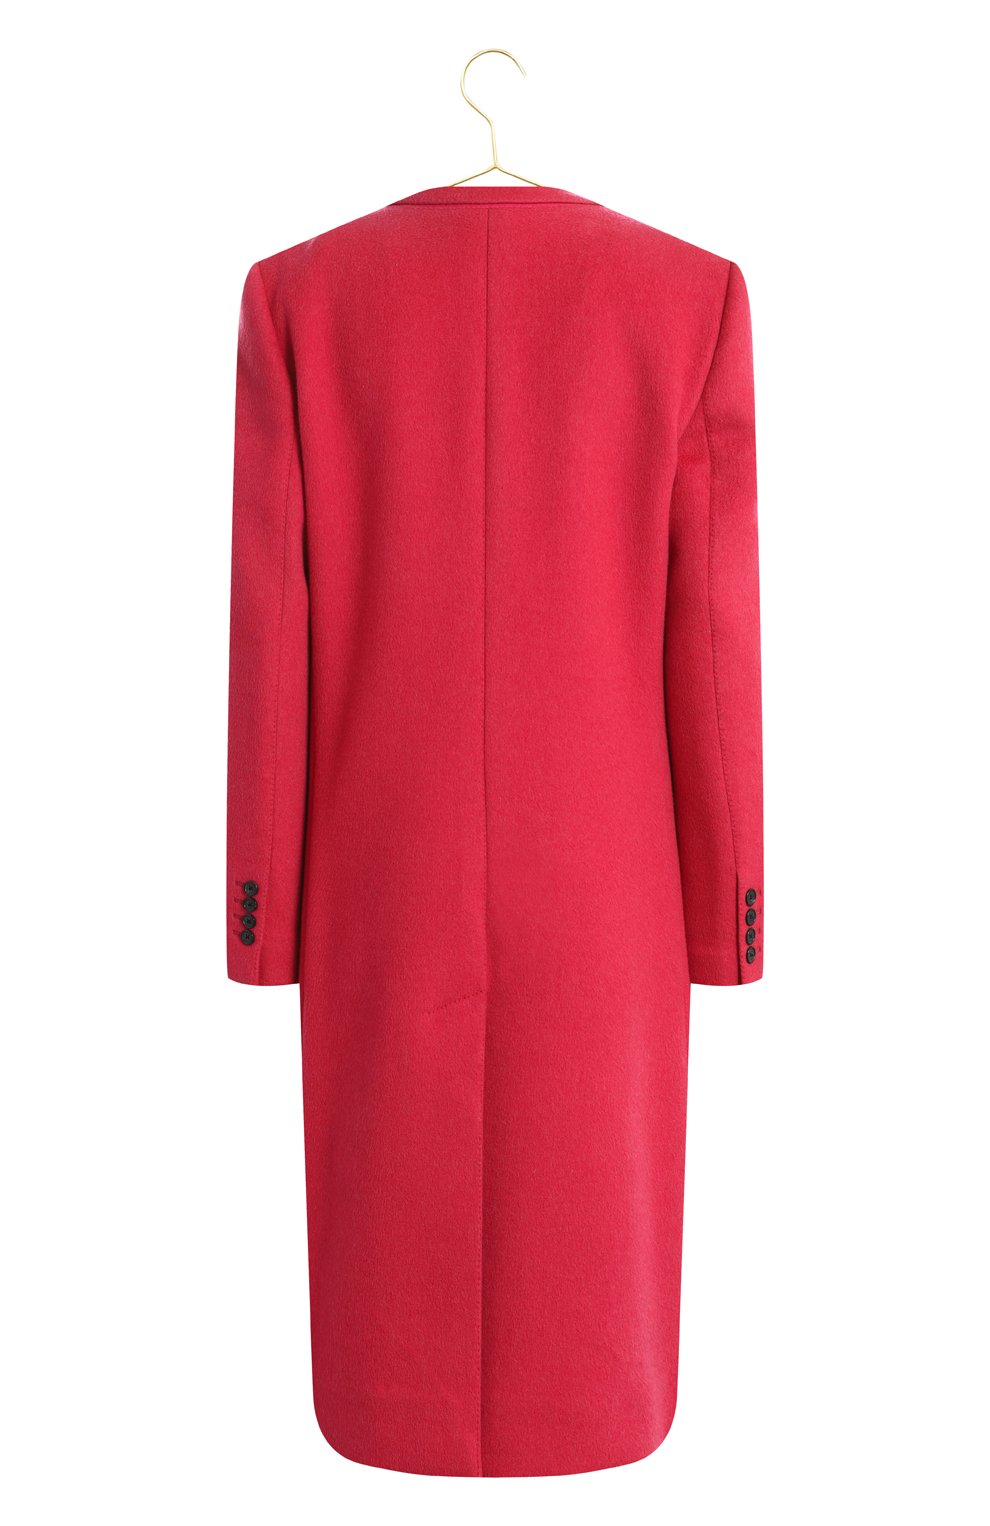 Пальто из шерсти и кашемира | Dolce & Gabbana | Розовый - 2